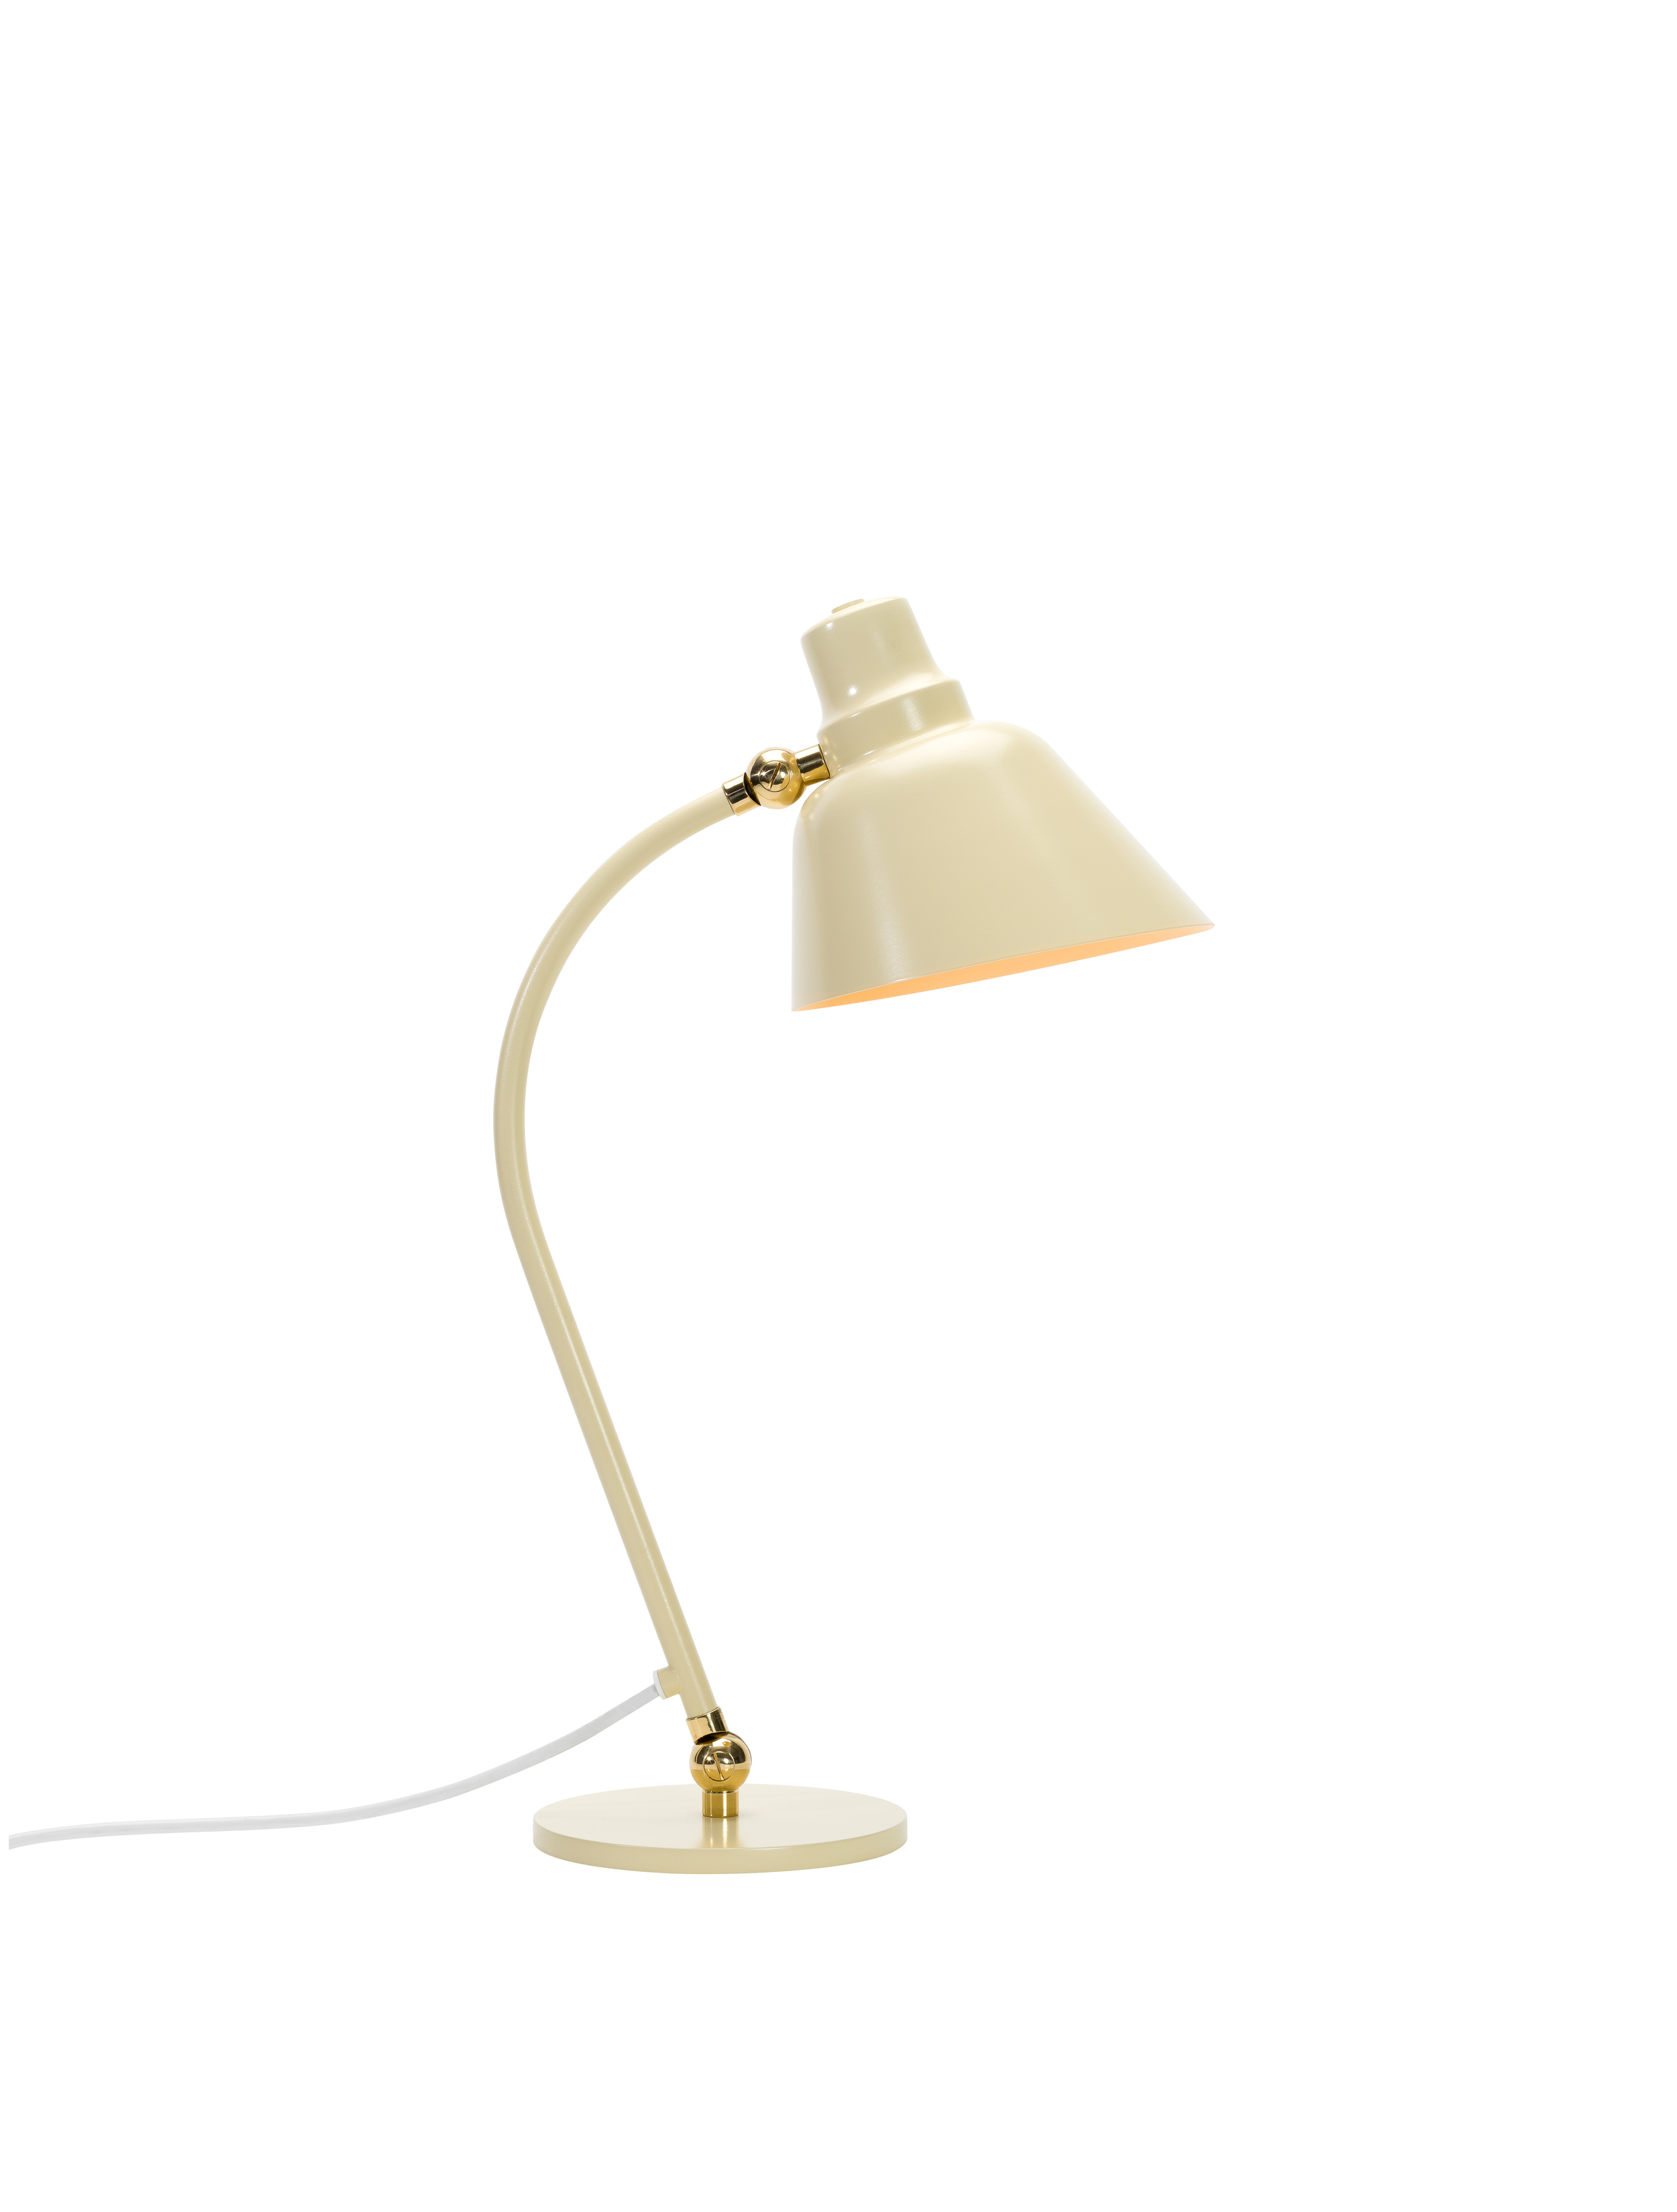 GA5 Table Lamp by Erik Gunnar Asplund for Blond Belysning